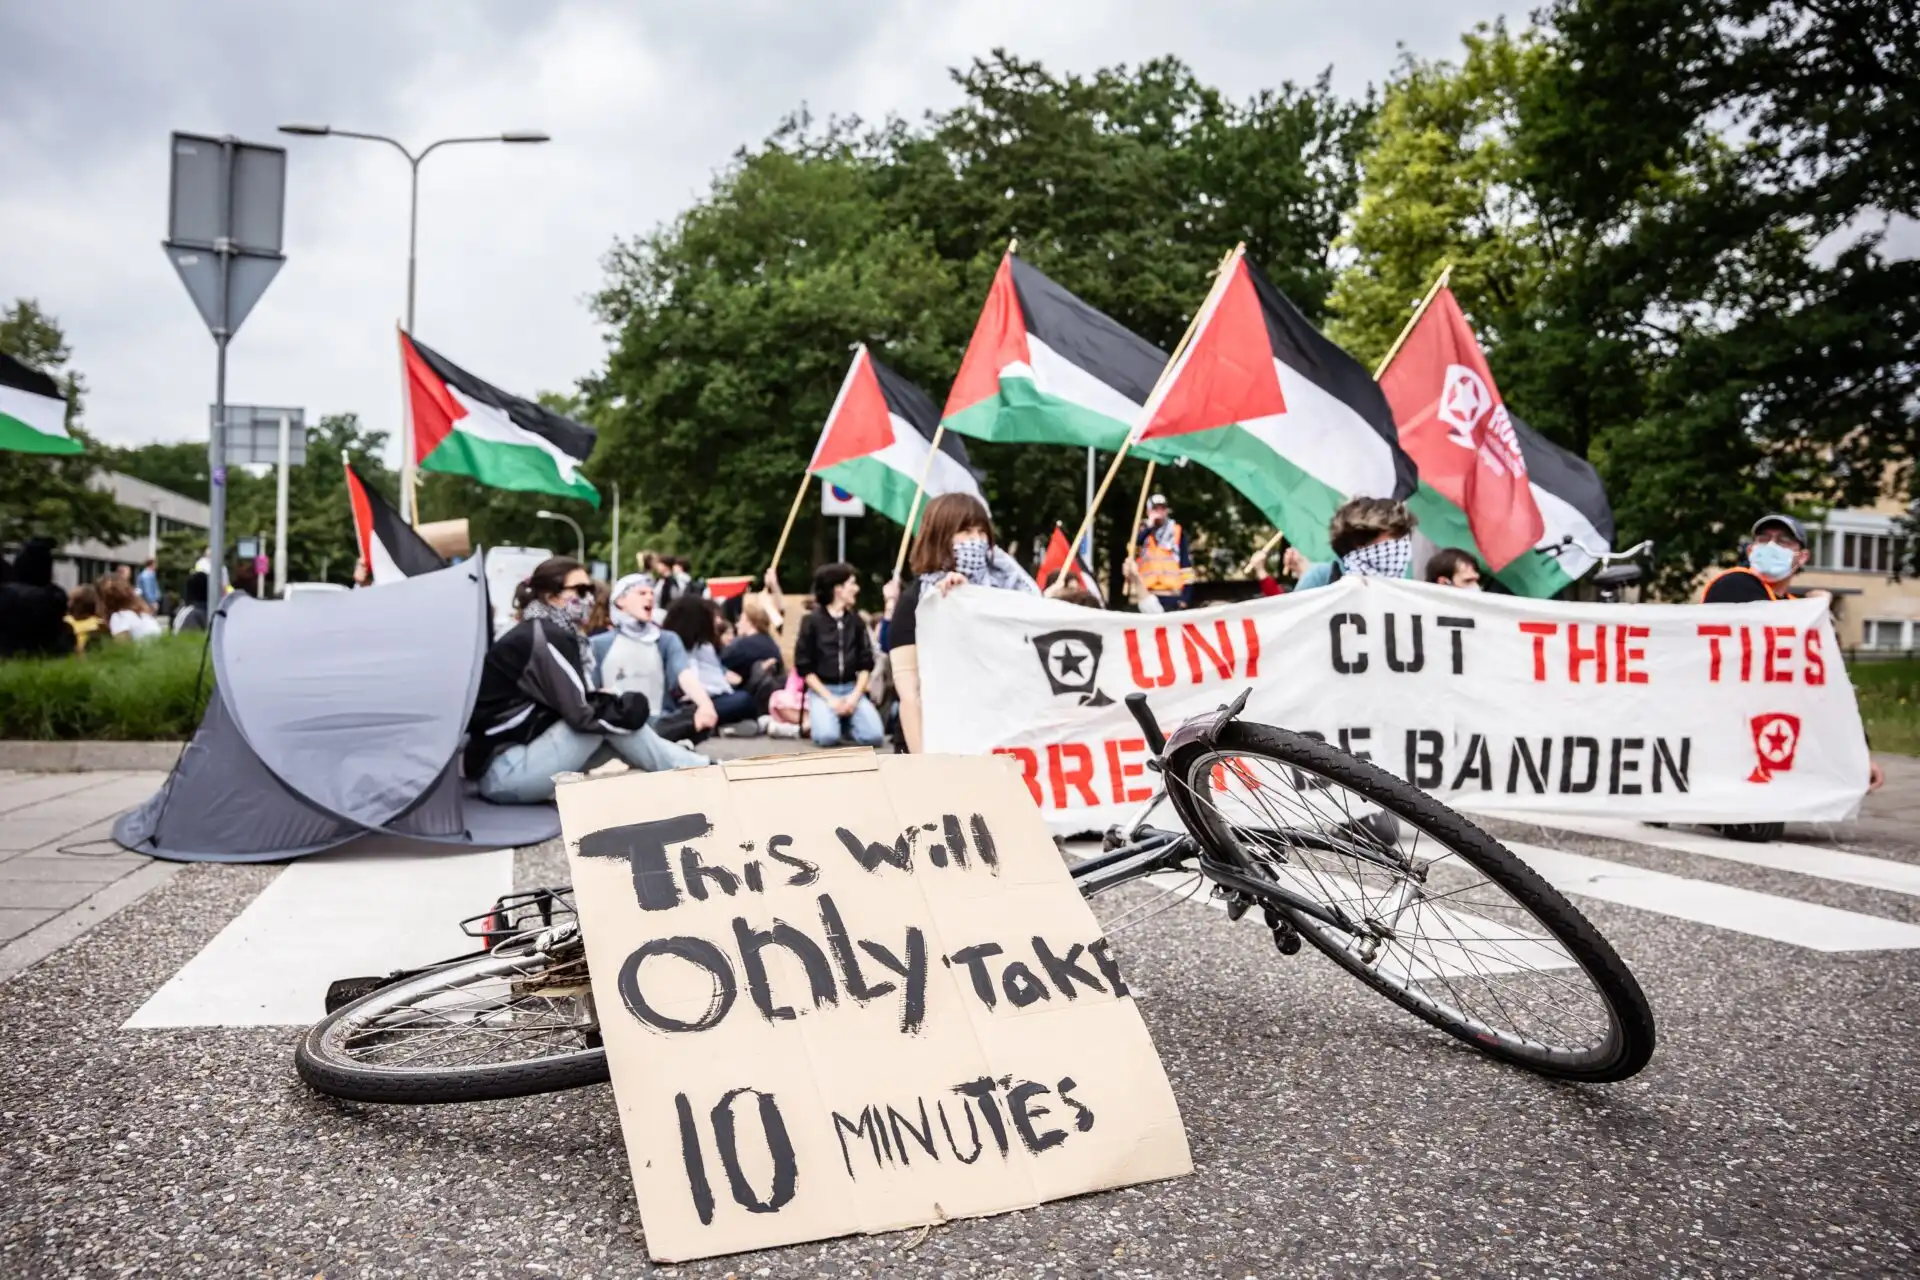 Protestas a favor de Palestina permitidas en el campus: revista Vox